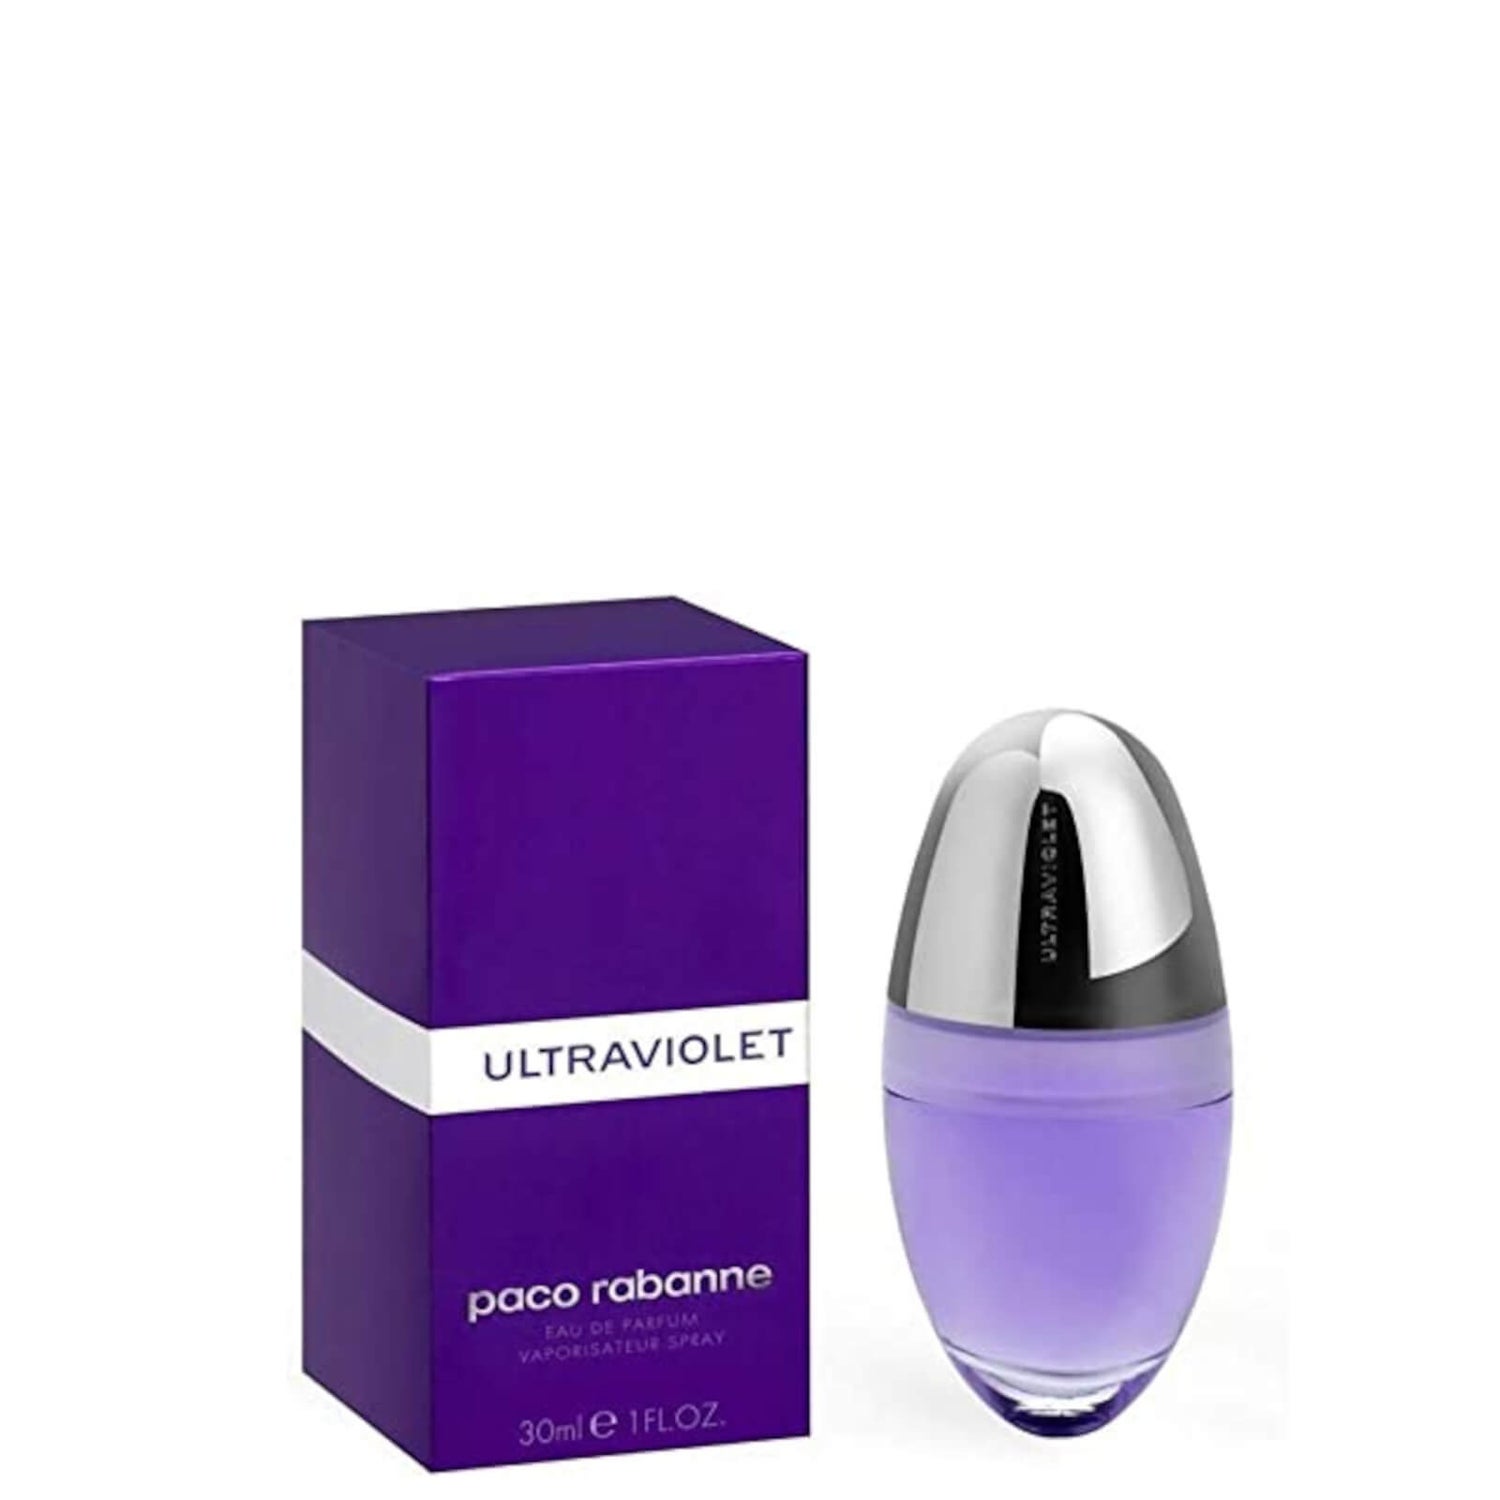 Paco Rabanne Ultraviolet for Her Eau de Parfum 30ml